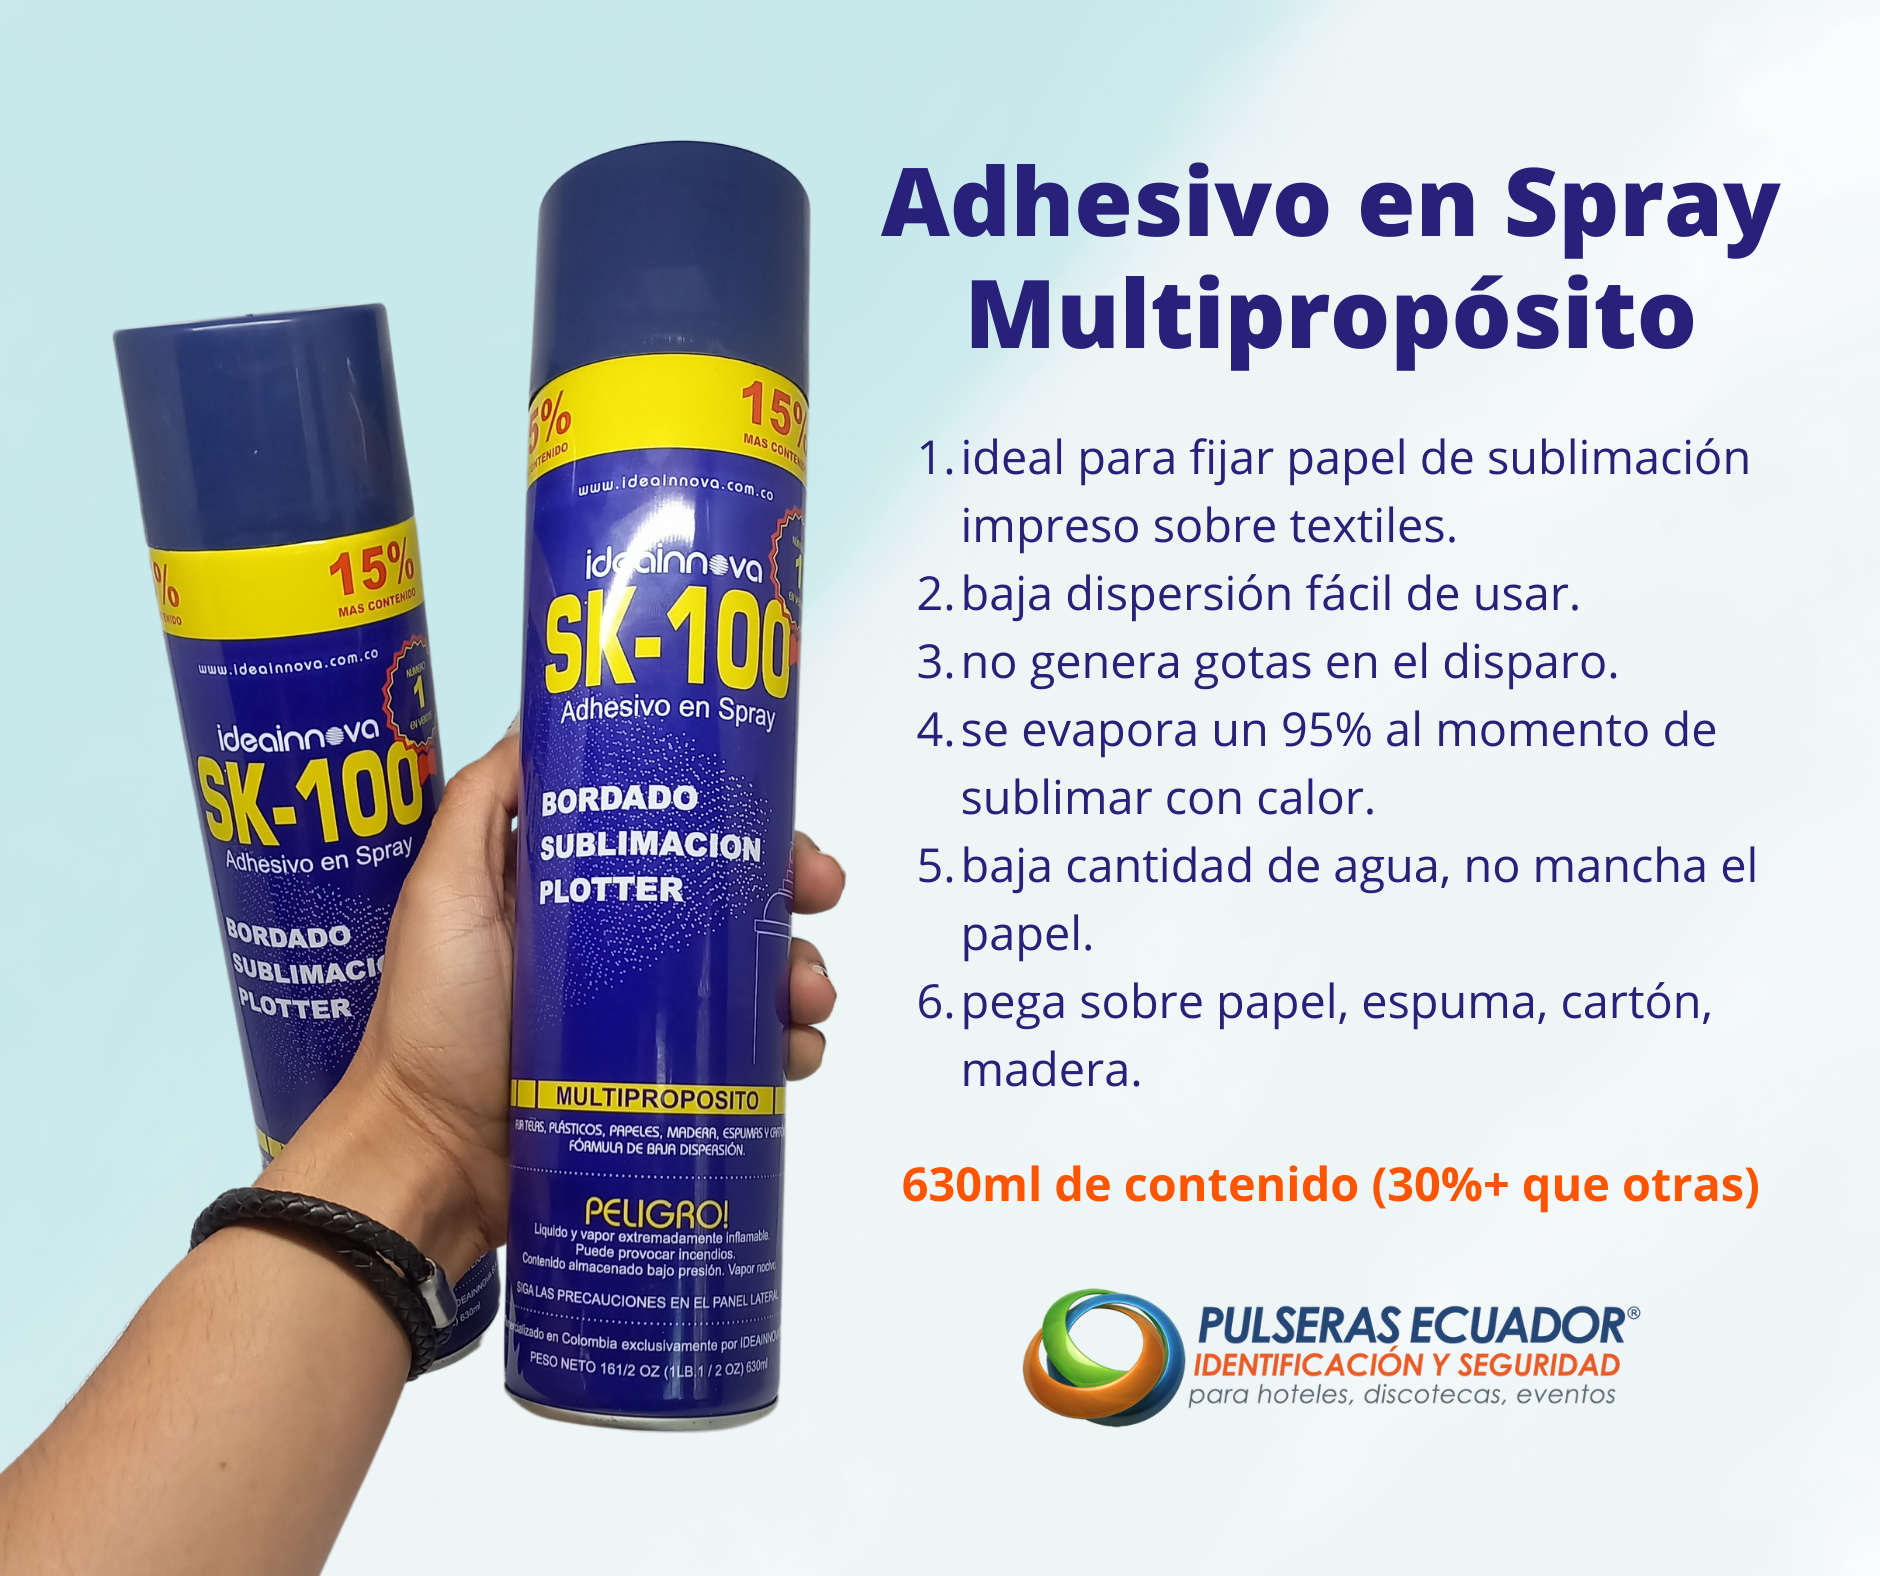 Adhesivo en Spray Multipropósito